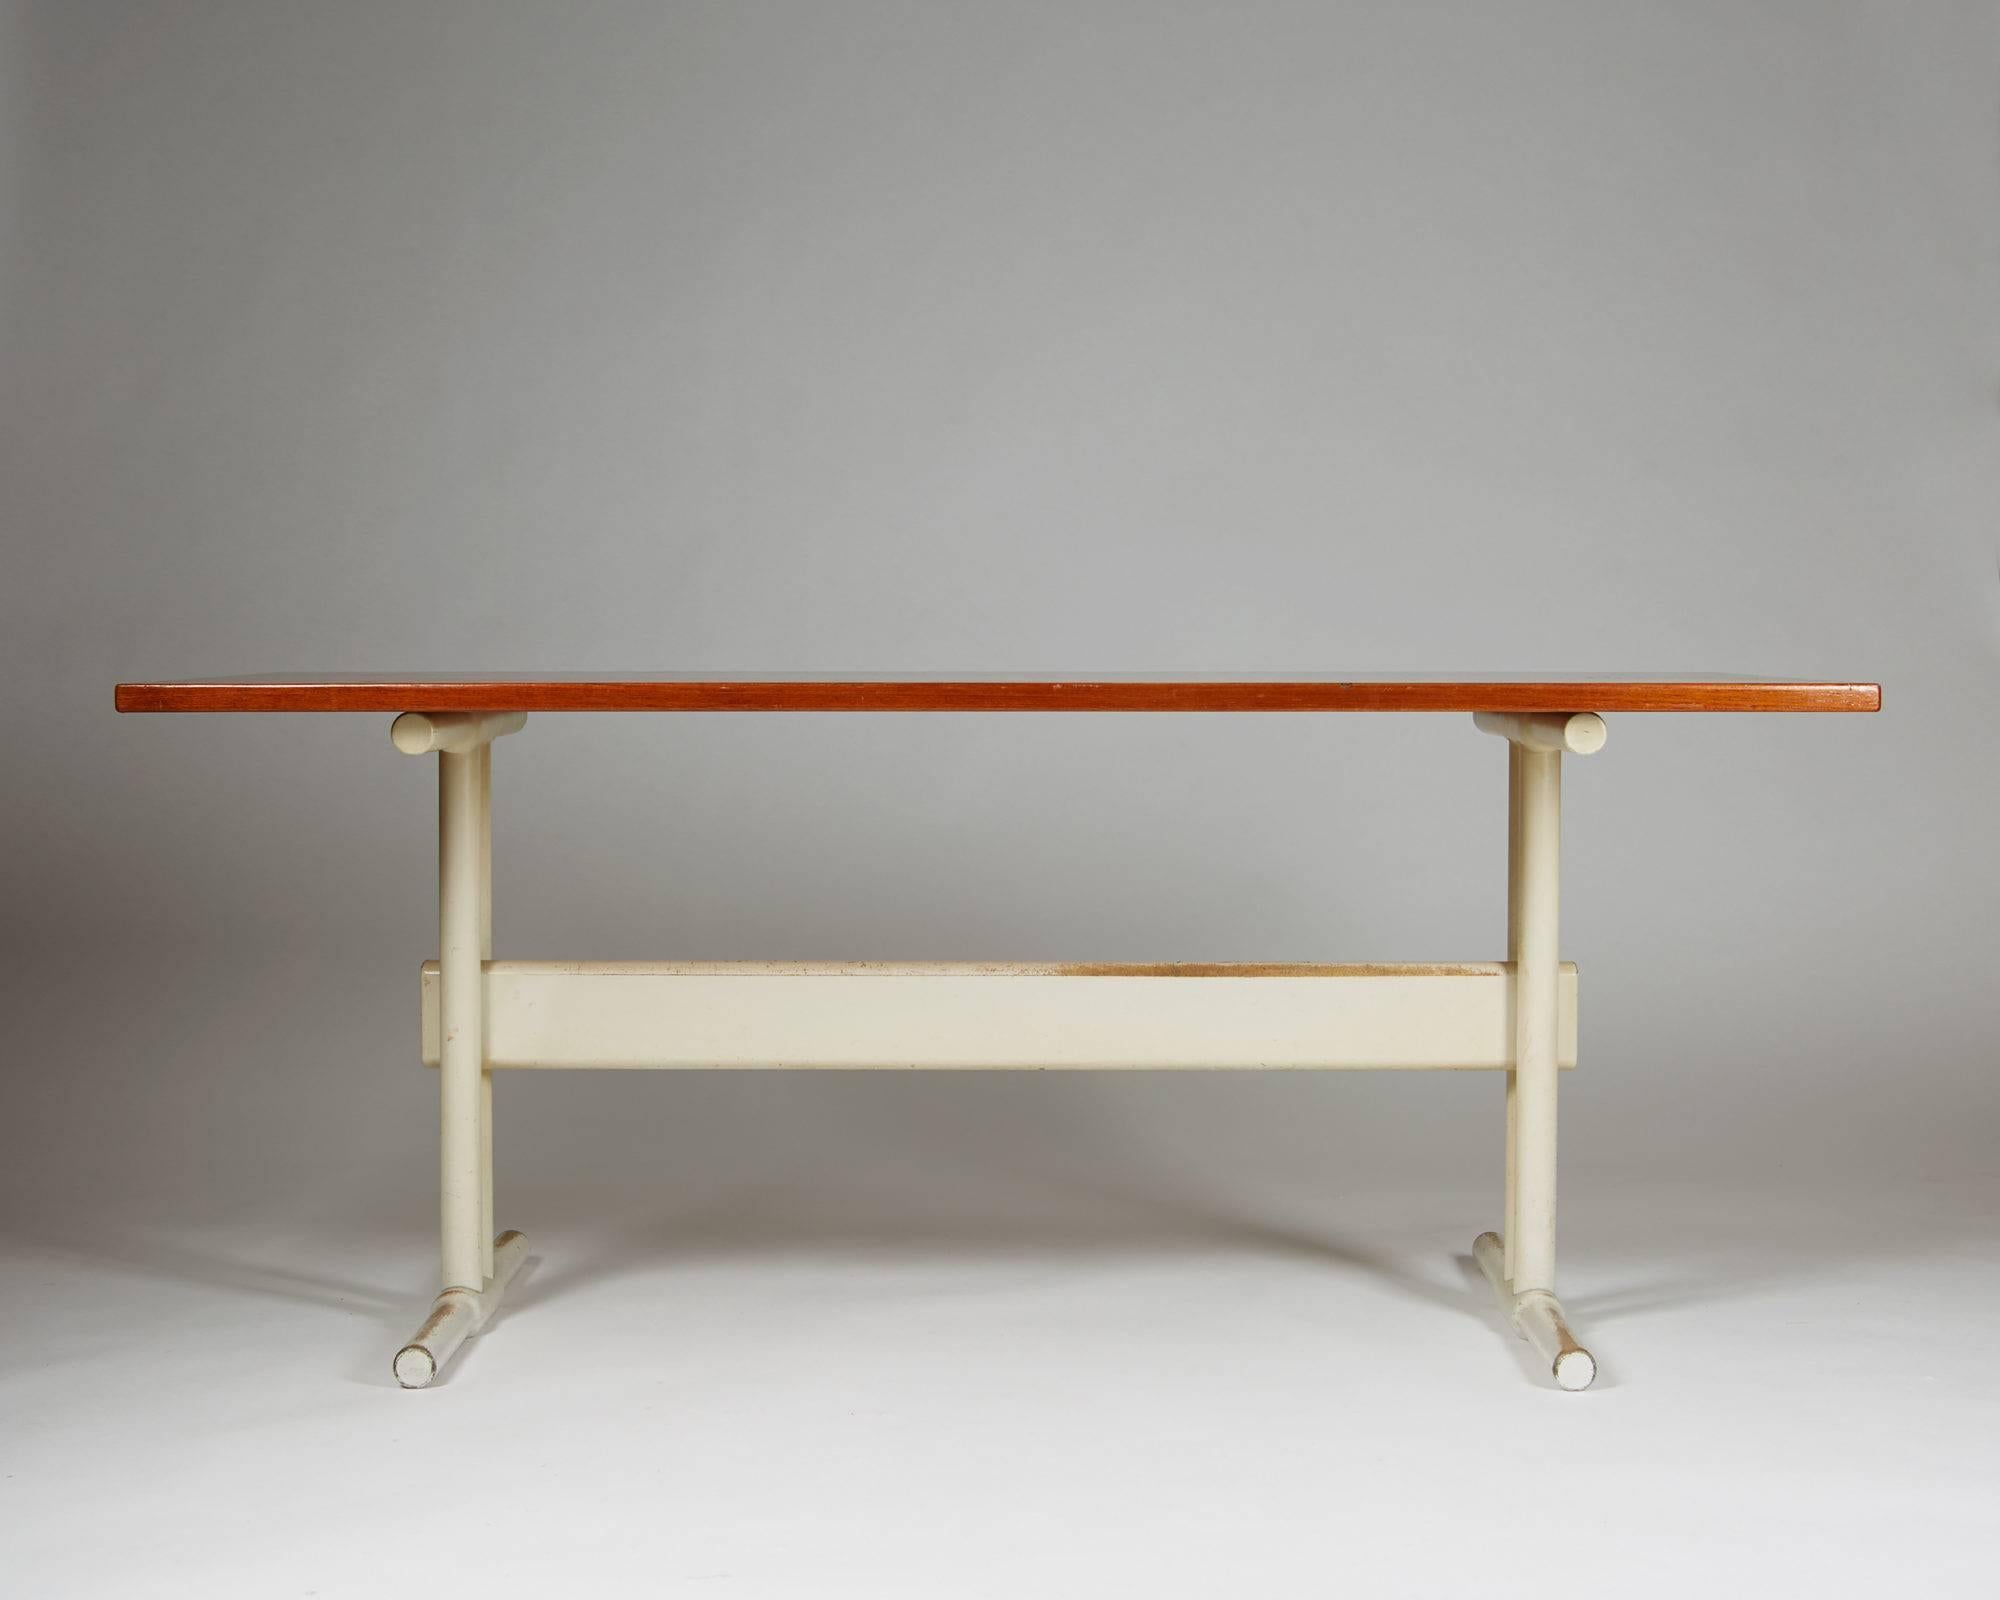 Schreibtisch/Esstisch, anonym, Dänemark, 1950er Jahre.
Platte aus Teakholz mit Sockel aus lackiertem Holz.

Maße: H 72 cm/ 28 ½